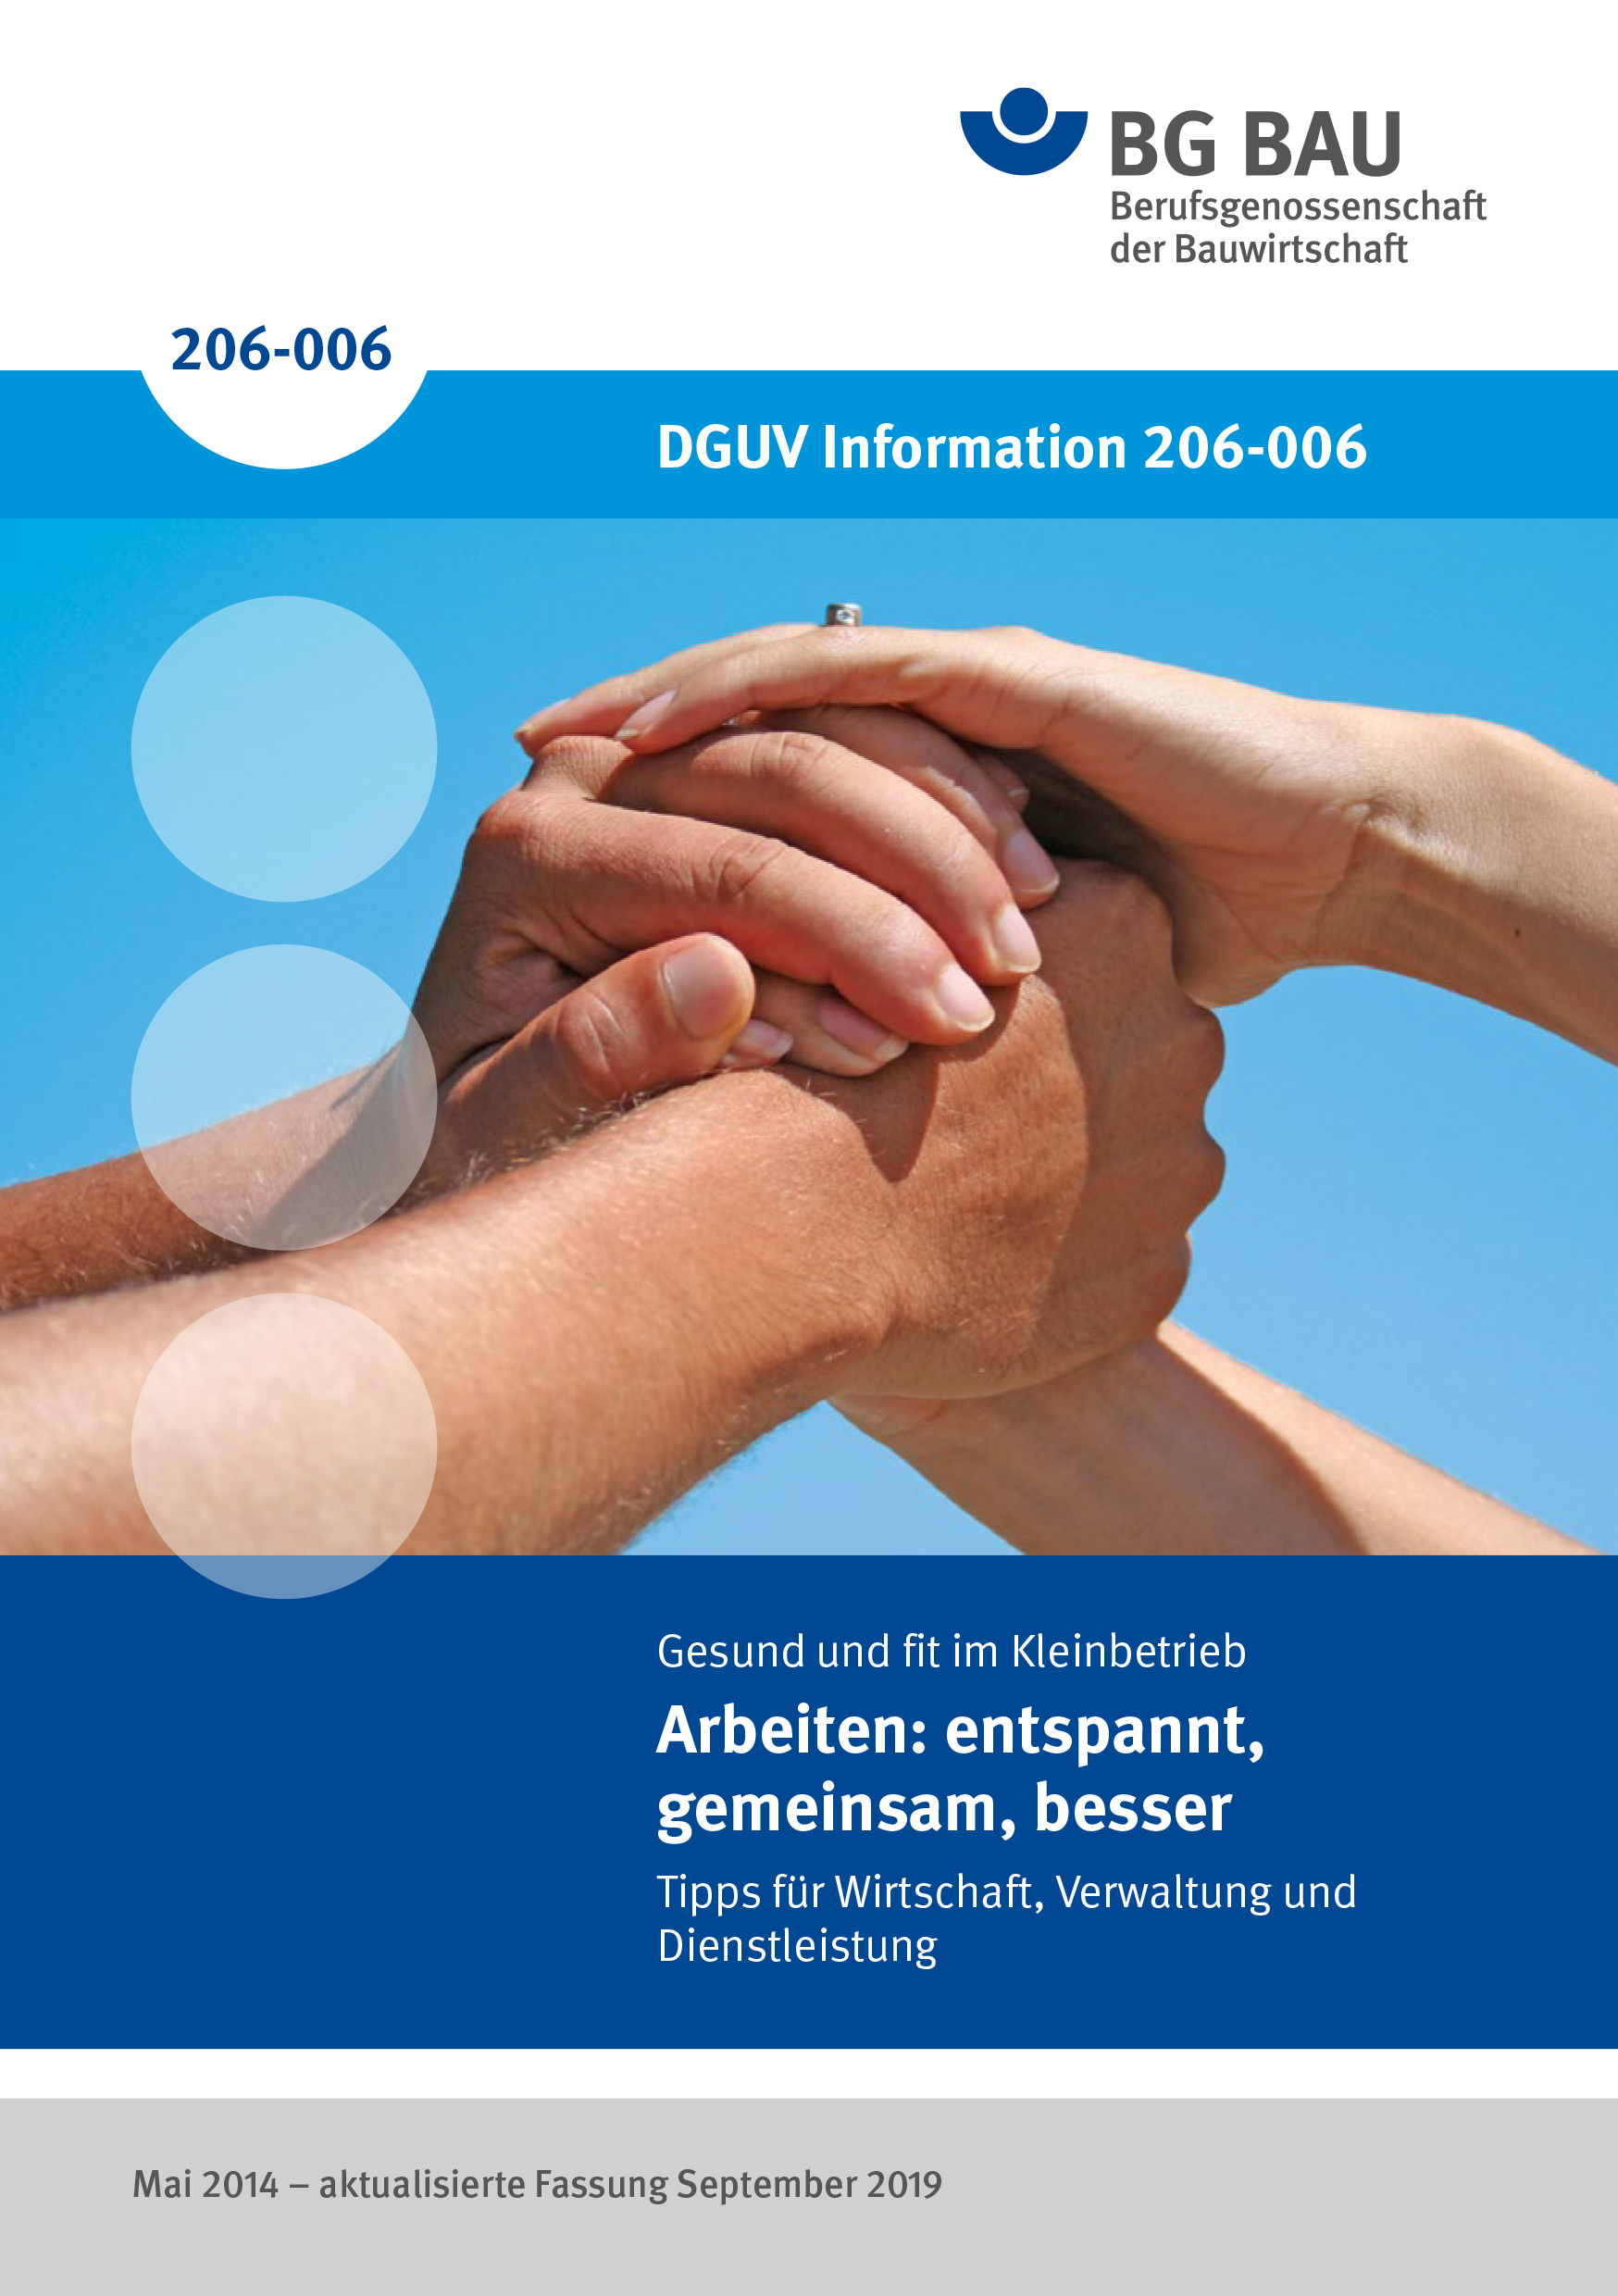 Titelbild zur DGUV Information 206-006: Arbeiten: entspannt, gemeinsam, besser.